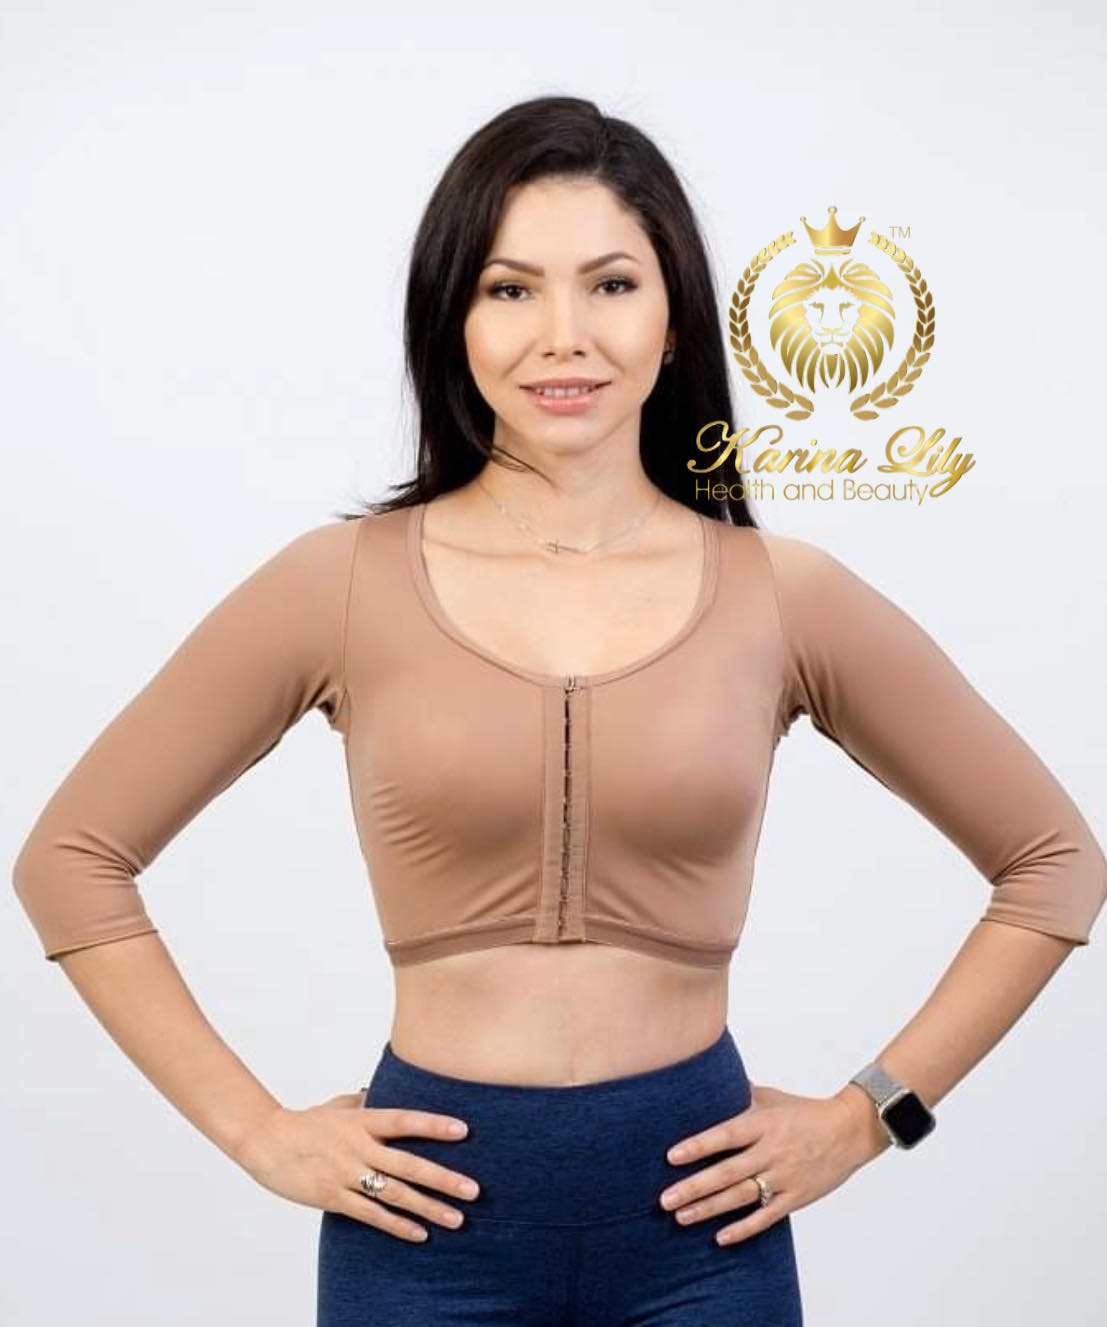 Arm Faja with bra (Faja de Brazos y bustos) – Karina Lily Health